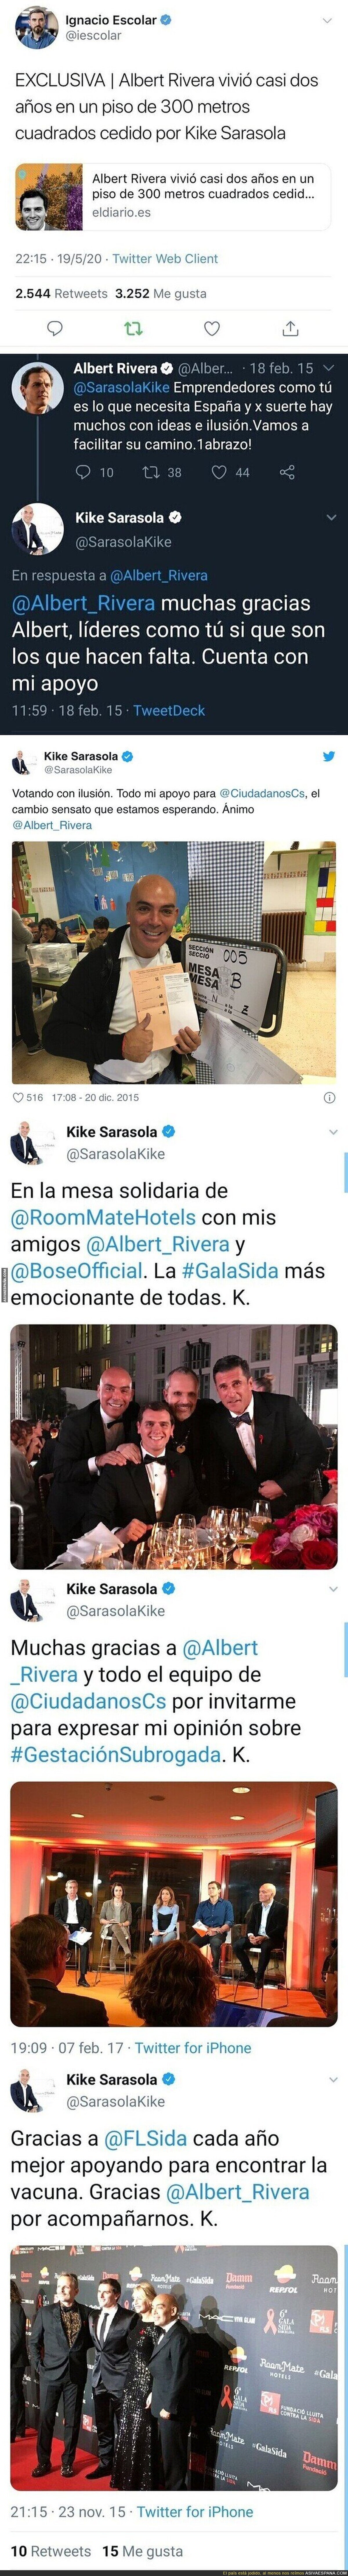 Ojo a todos los tuits que le dedicaba Kike Sarasola a Albert Rivera años atrás al saberse hoy que le cedió una casa de 300m2